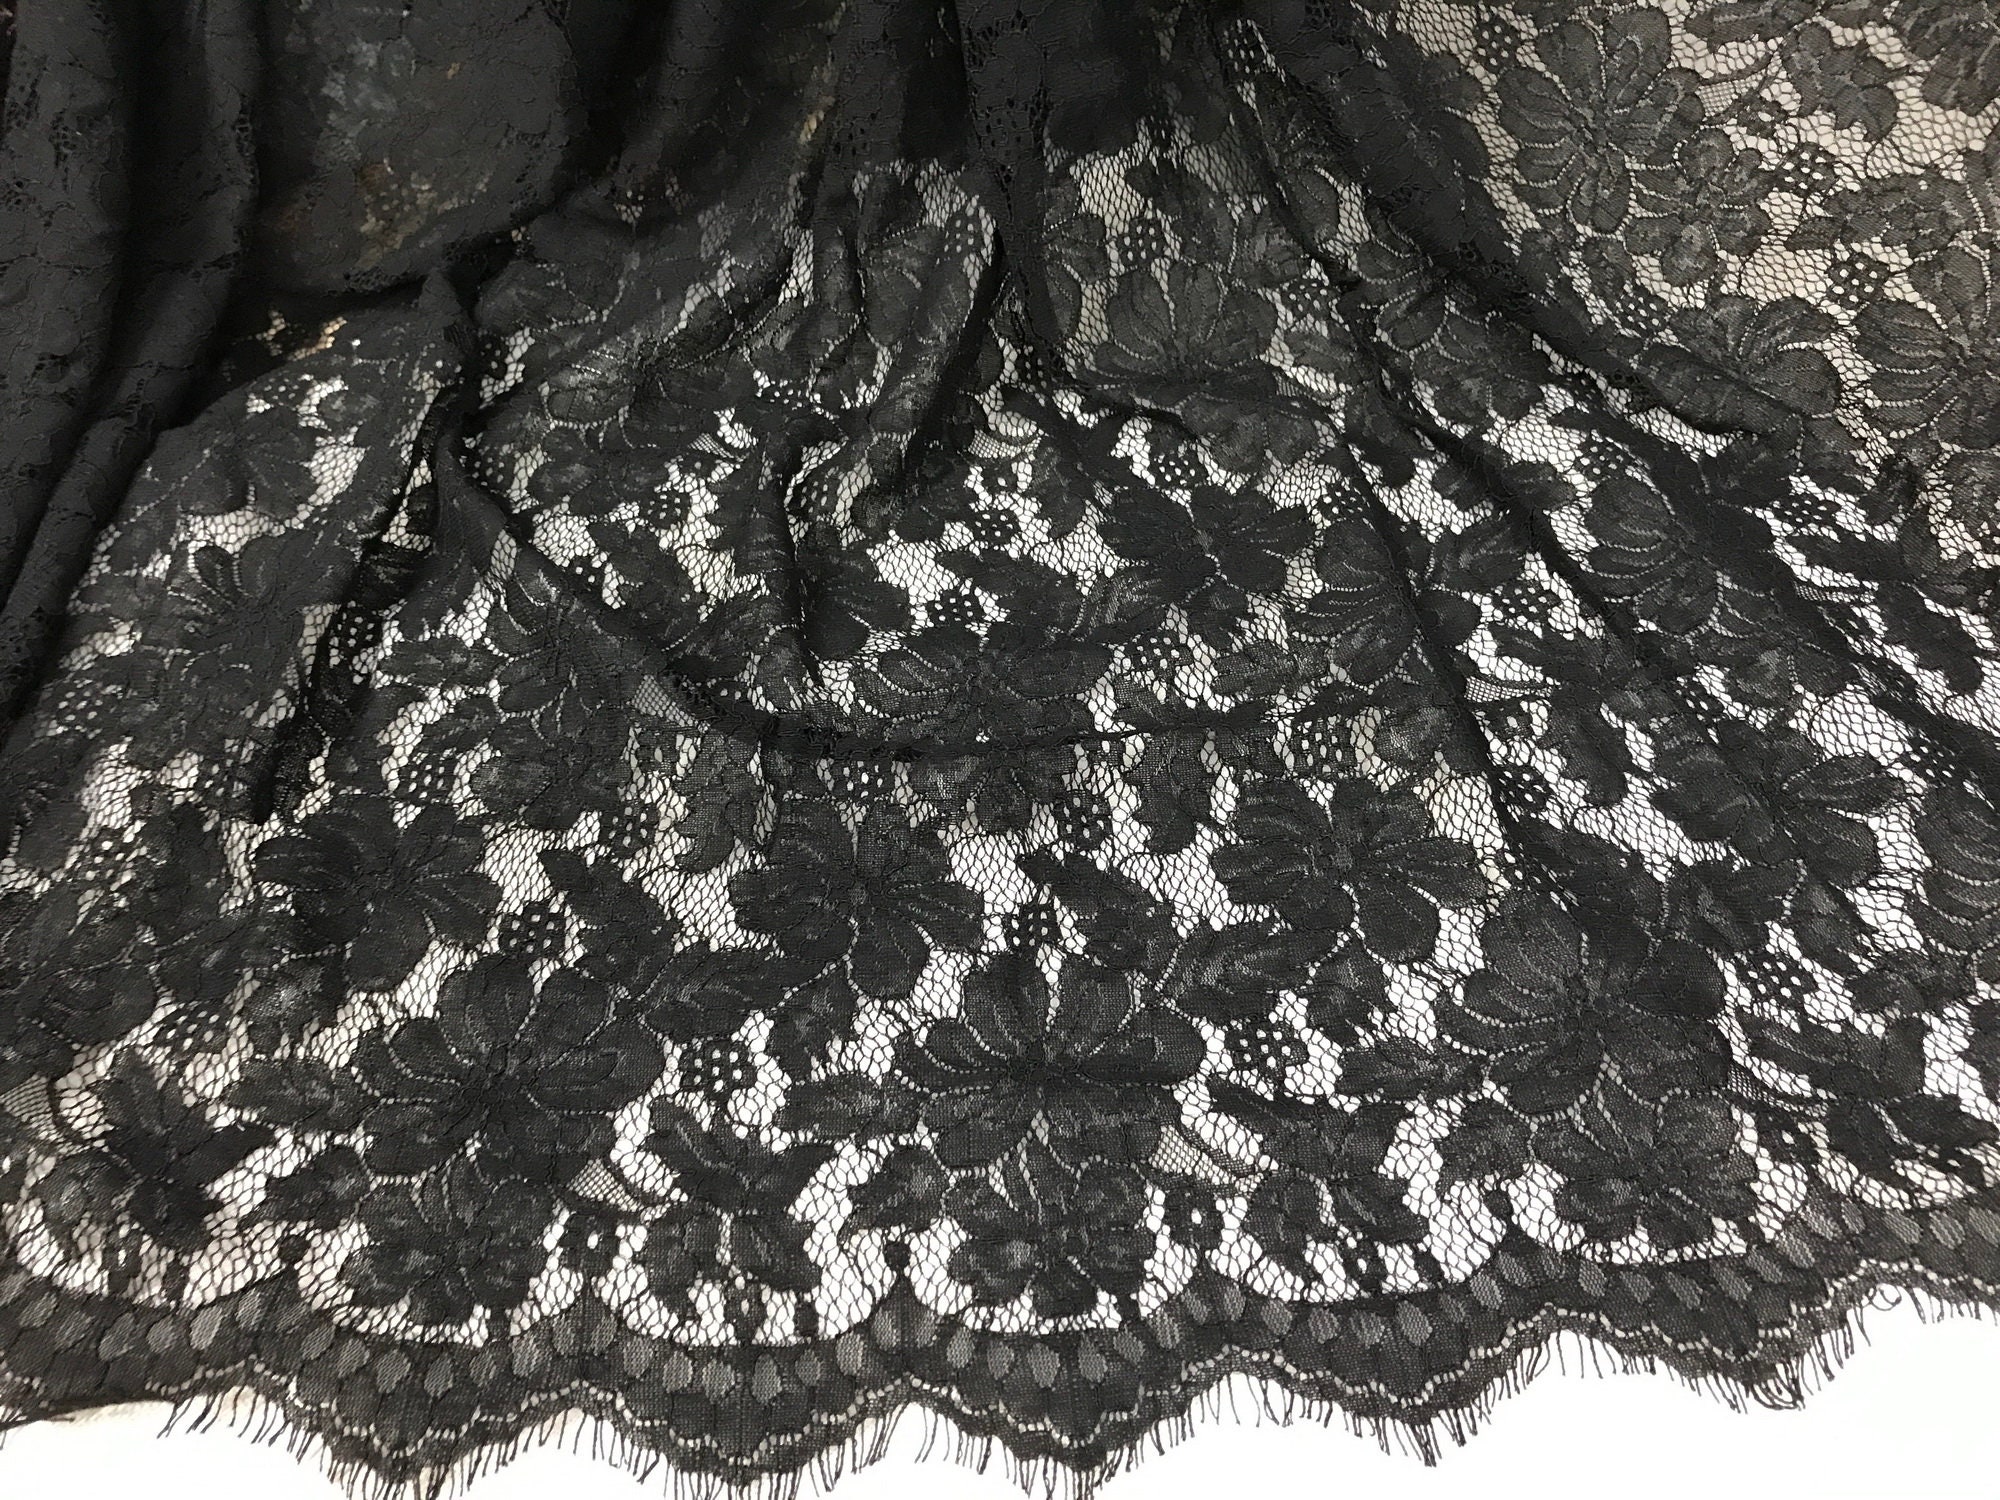 Black Scalloped Fabric Corded Eyelash Lace Fabric Black | Etsy